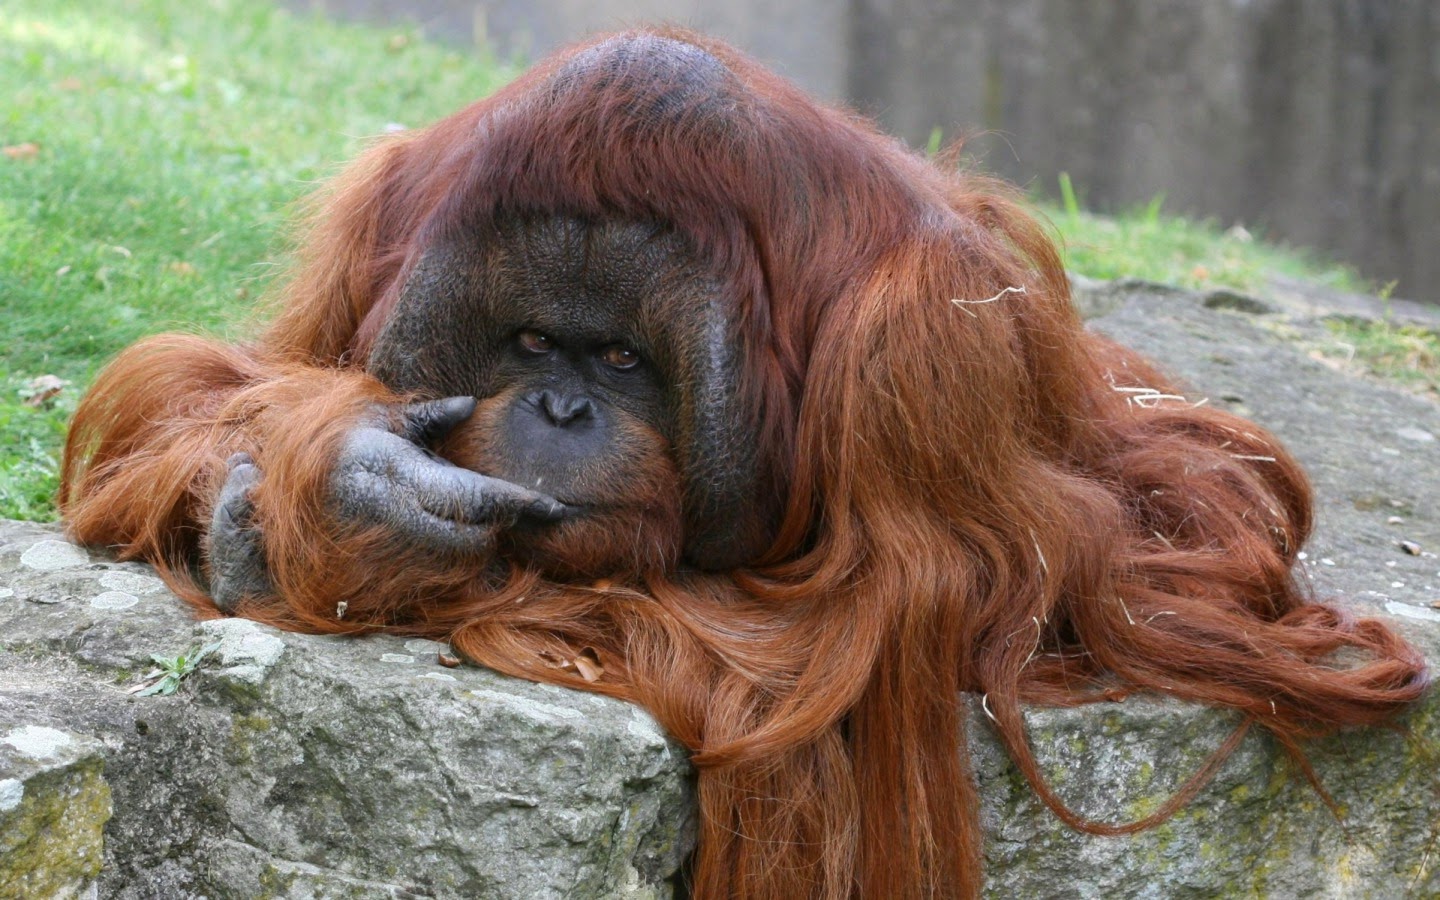 bored orangutan